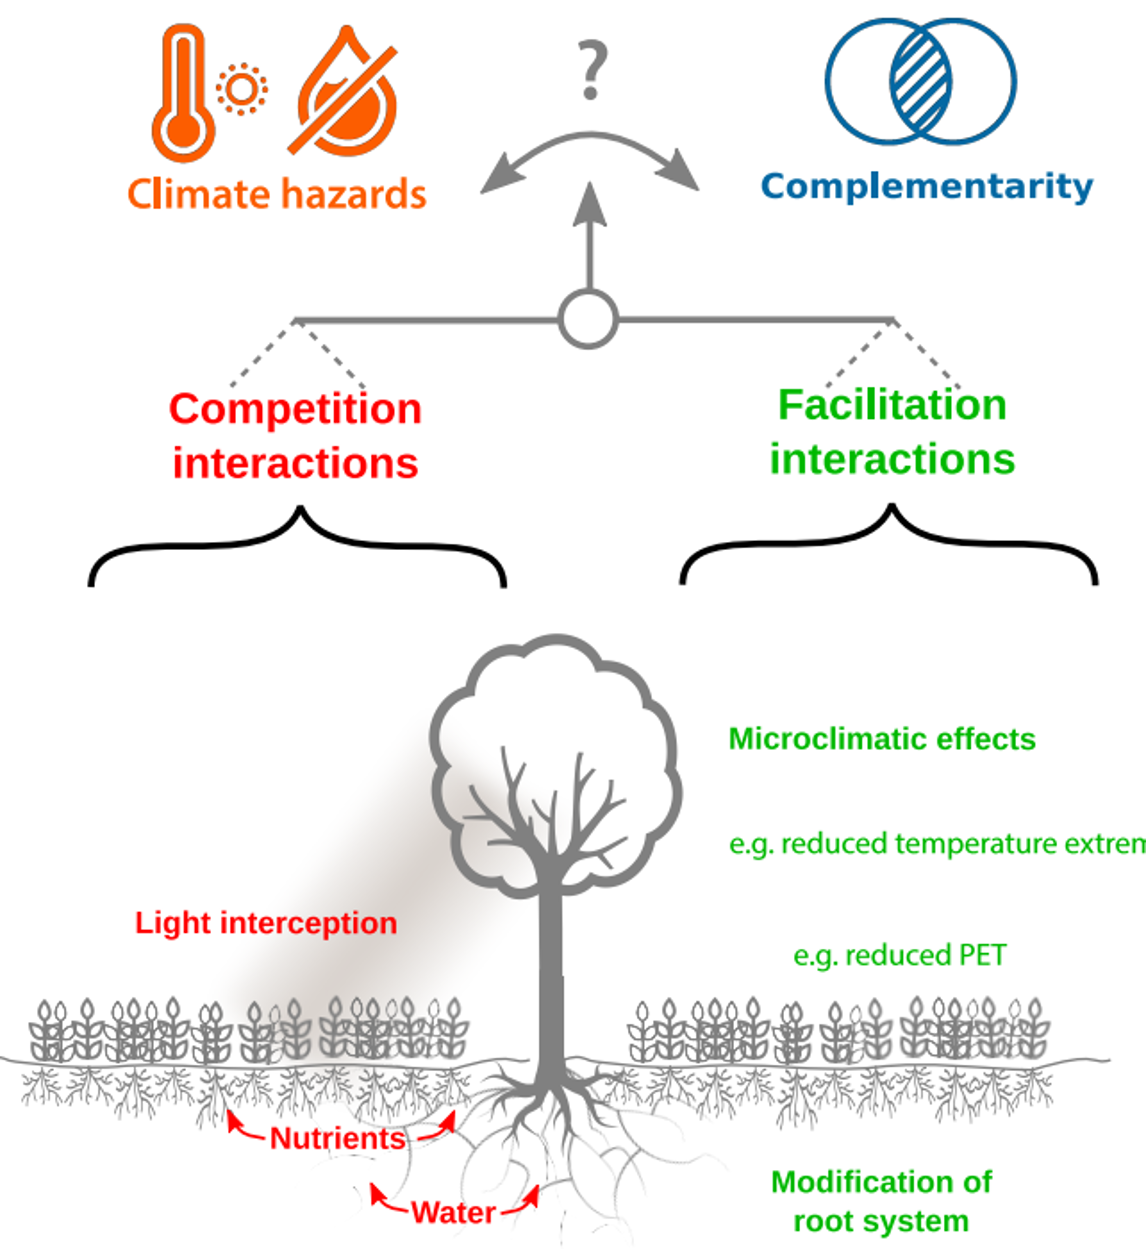 De complexe interacties tussen complementariteit en competitie (naar: Blanchet et al. 2019)